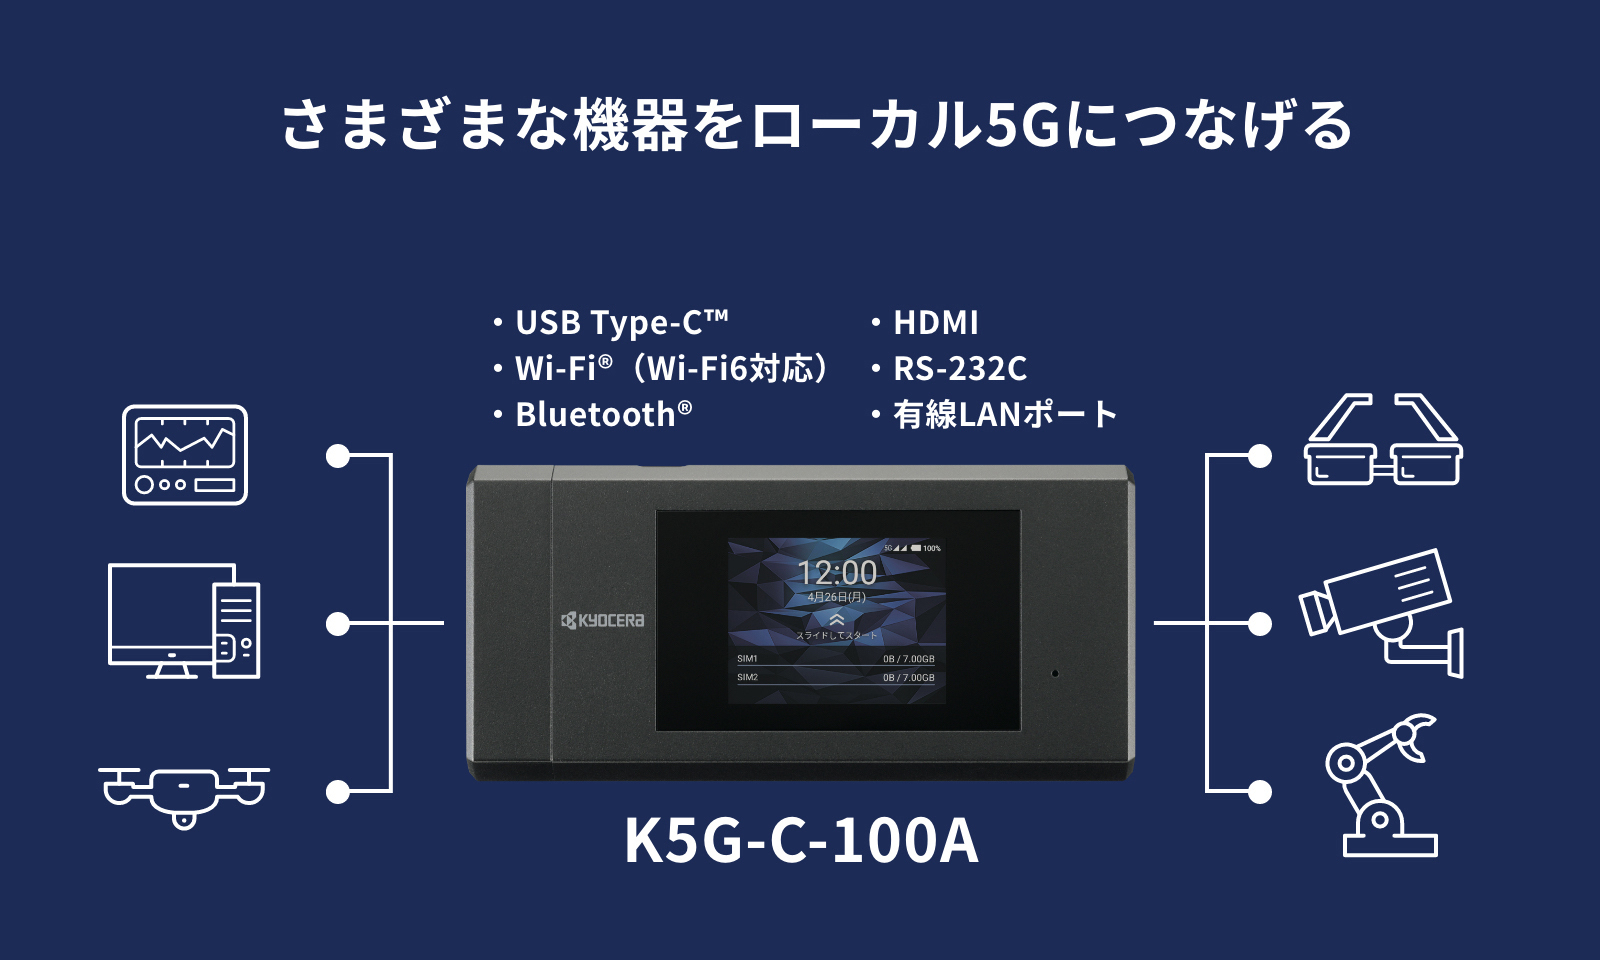 京セラ 業務用 5G モバイルルーター K5G-C-100A Dual SIM-